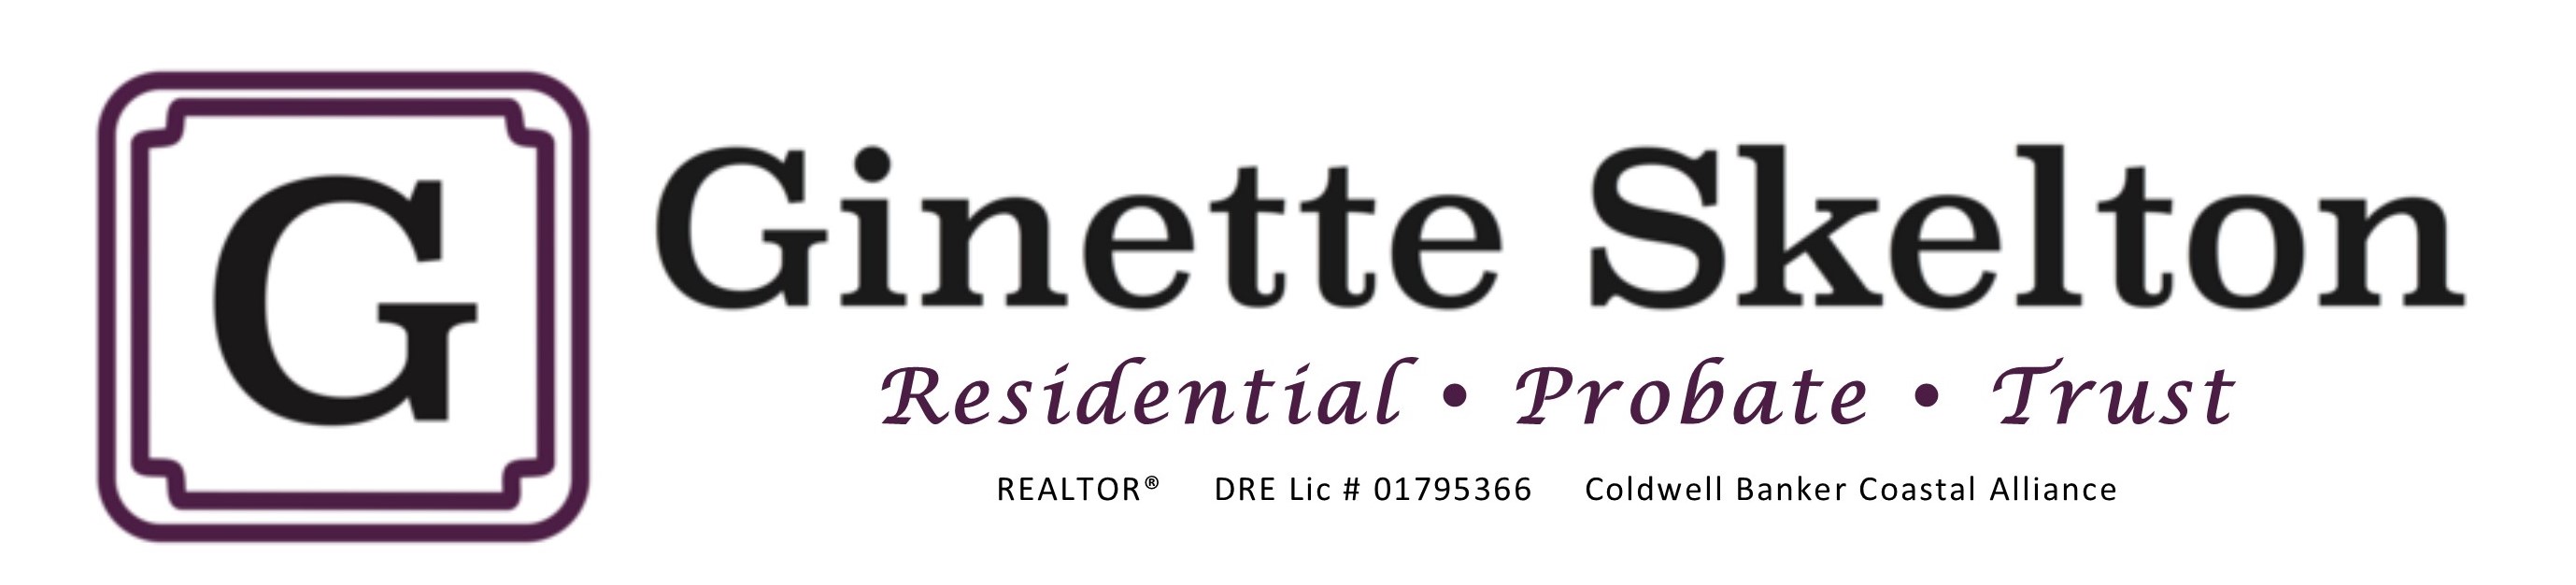 Ginette Skelton, Realtor<br>Specializing in Probate and Trust Sales<br><br>Coldwell Banker Coastal Alliance